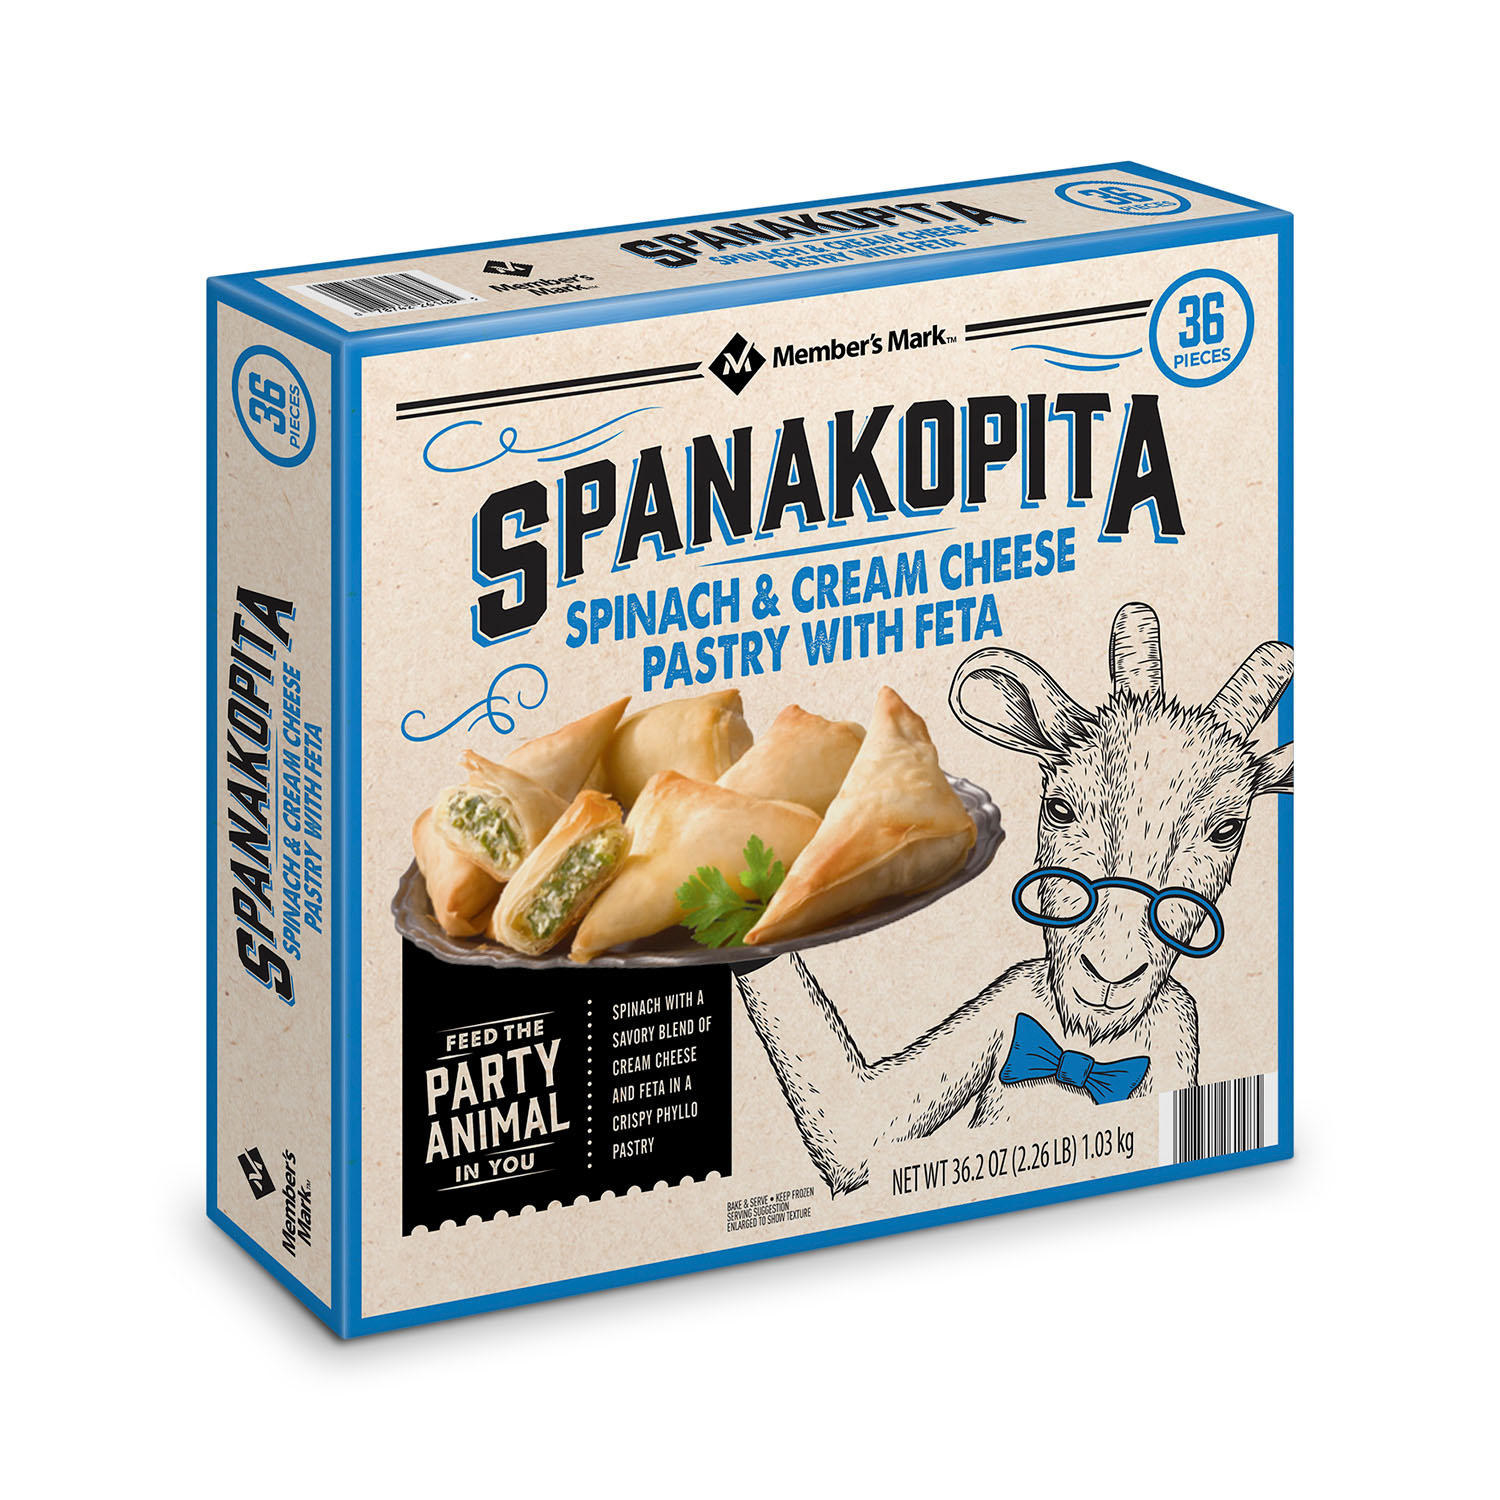 A box of Spanakopita